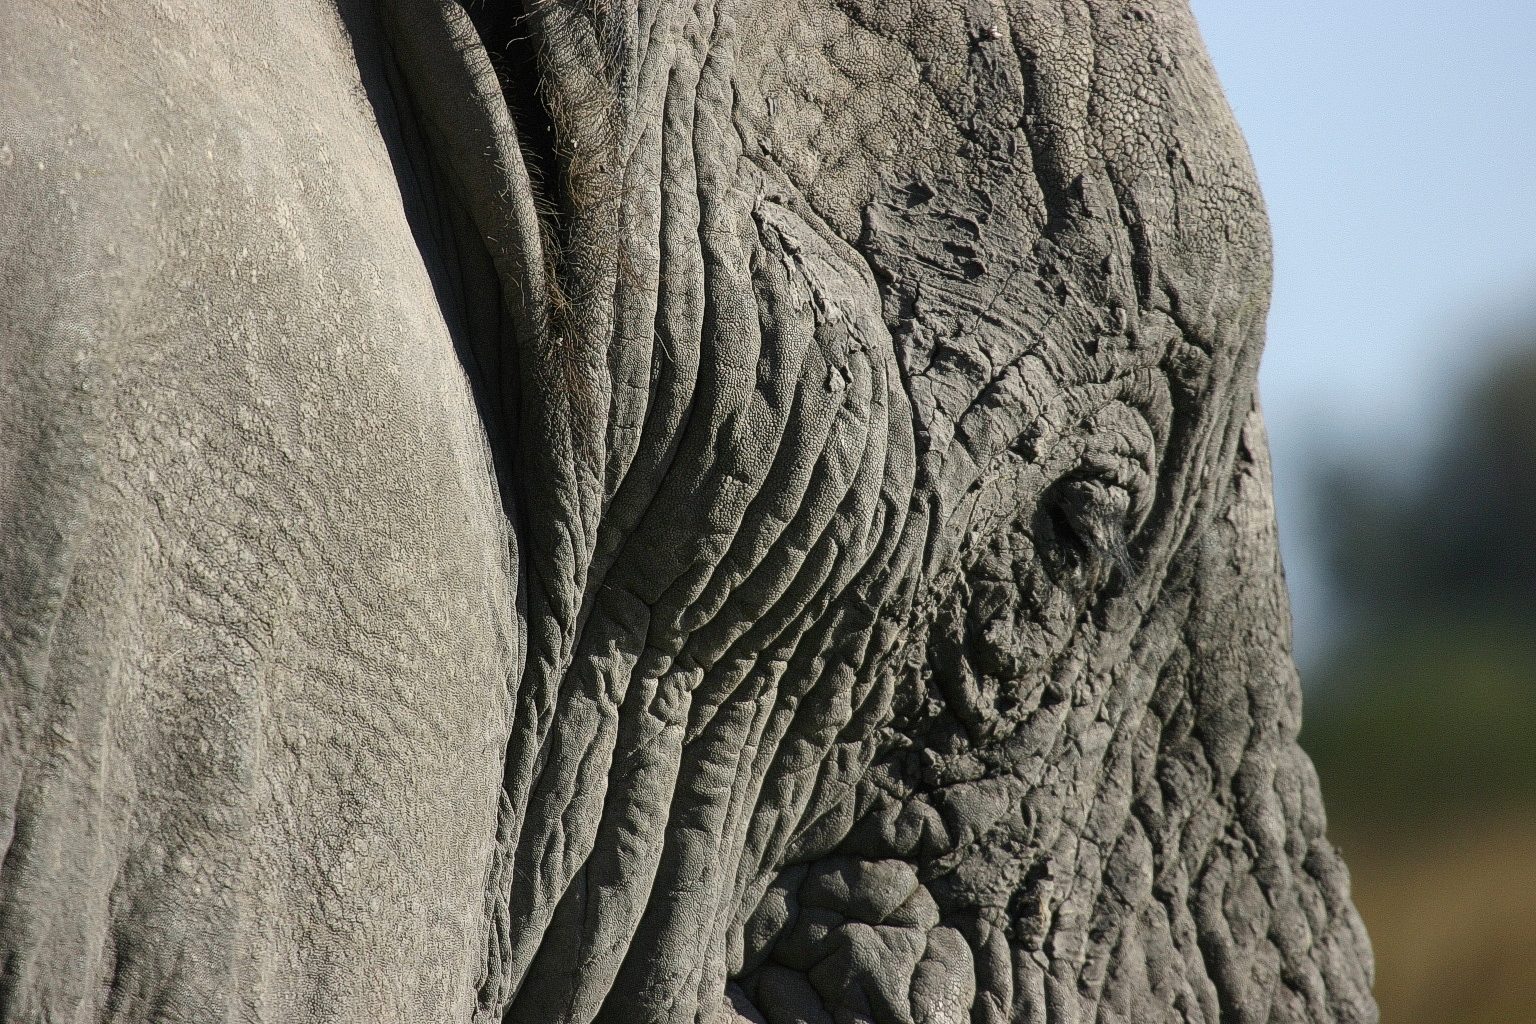 Elephant Head, Big, Ears, Elephant, Head, HQ Photo